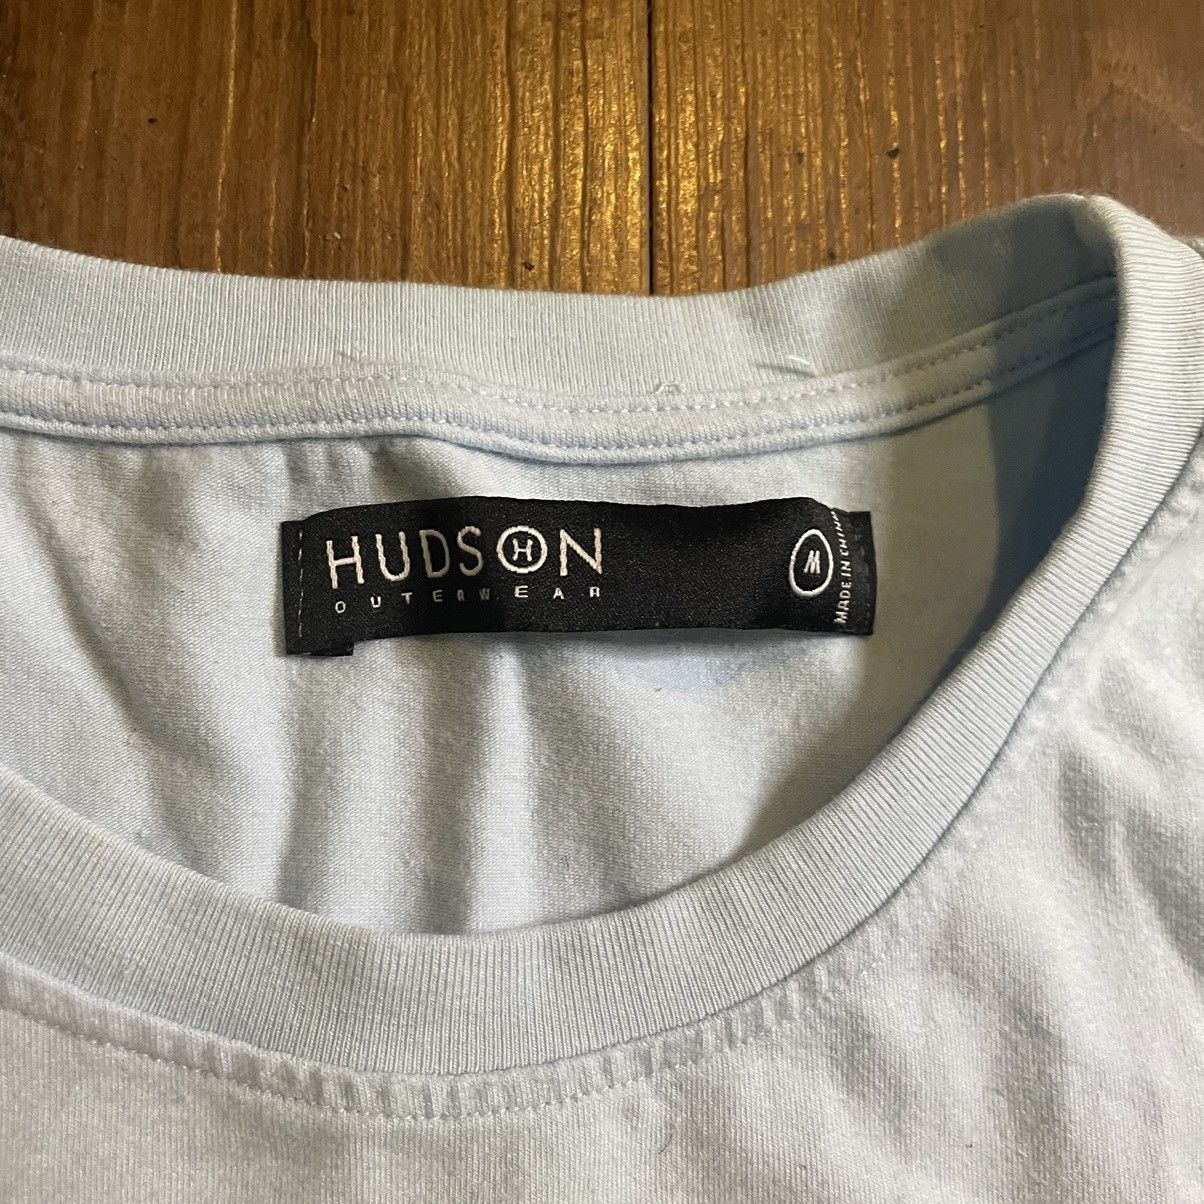 Streetwear WORN Hudson Outerwear Business (Sins) Shirt “Blue” Size US M / EU 48-50 / 2 - 2 Preview